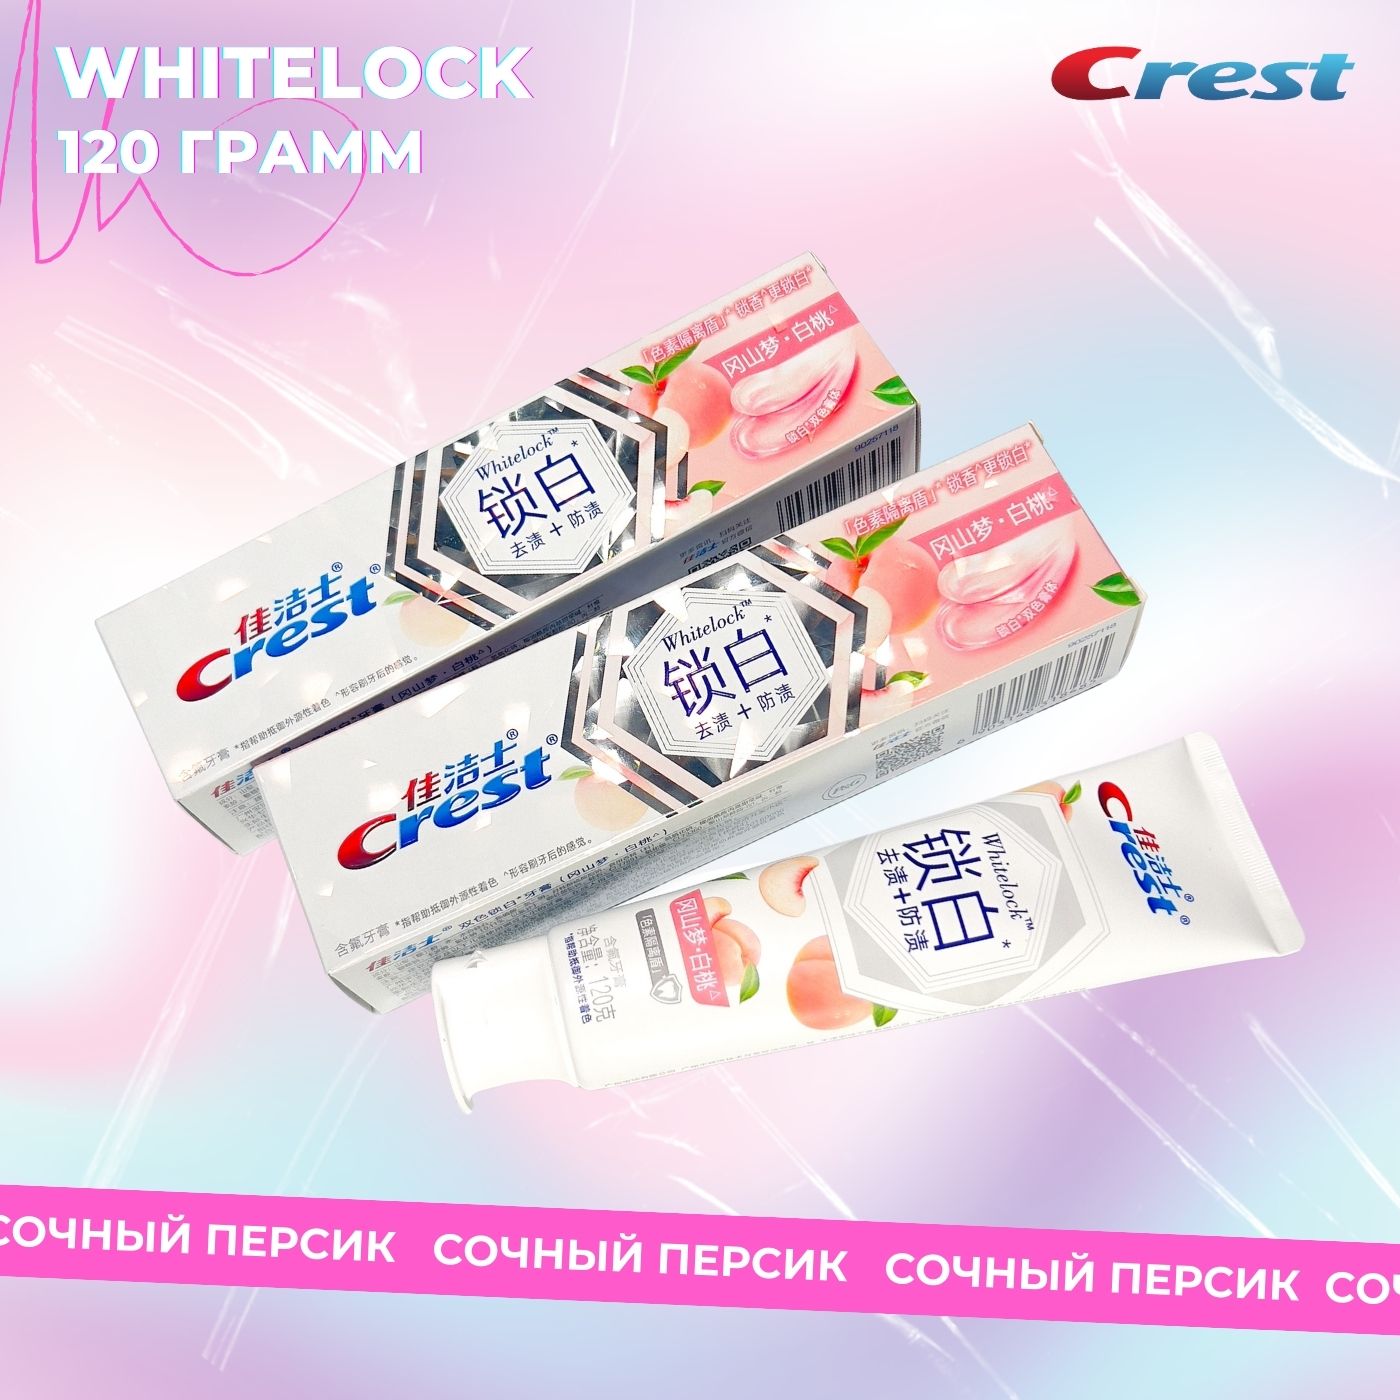 Зубная паста Crest Whitelock профессиональная отбеливающая белый персик 120г зубная паста отбеливающая crest brilliance advanced stain protection 3 шт по 24 г